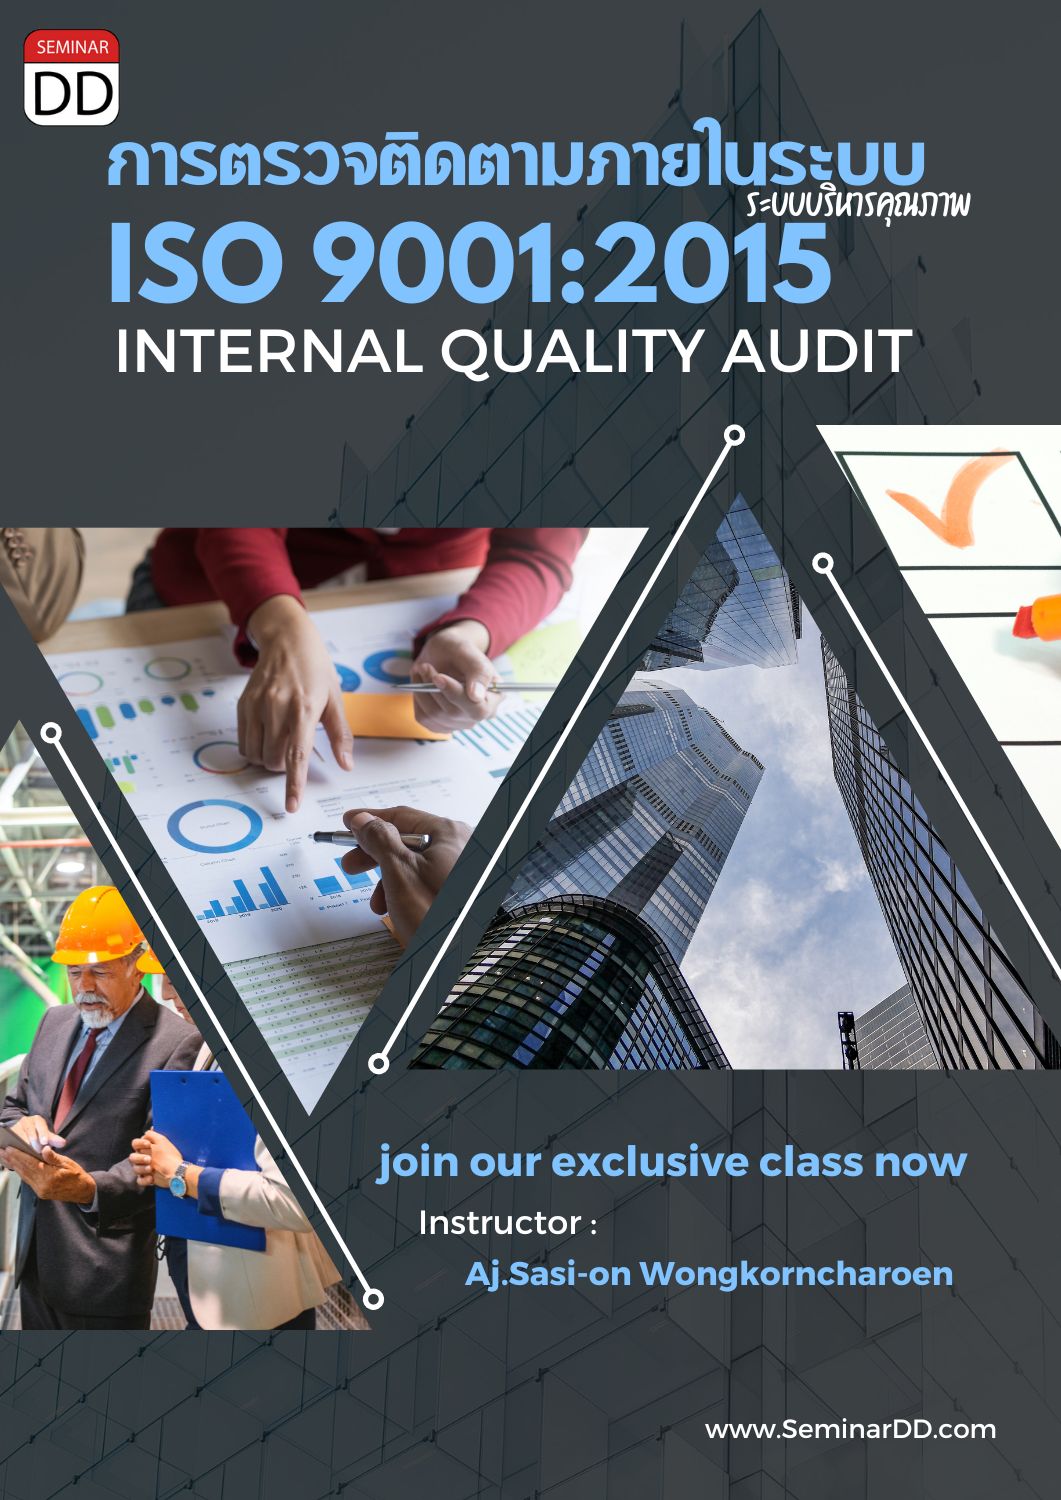 หลักสูตร การตรวจติดตามภายในระบบ ISO 9001:2015 ( ISO 9001:2015 Internal Quality Audit )